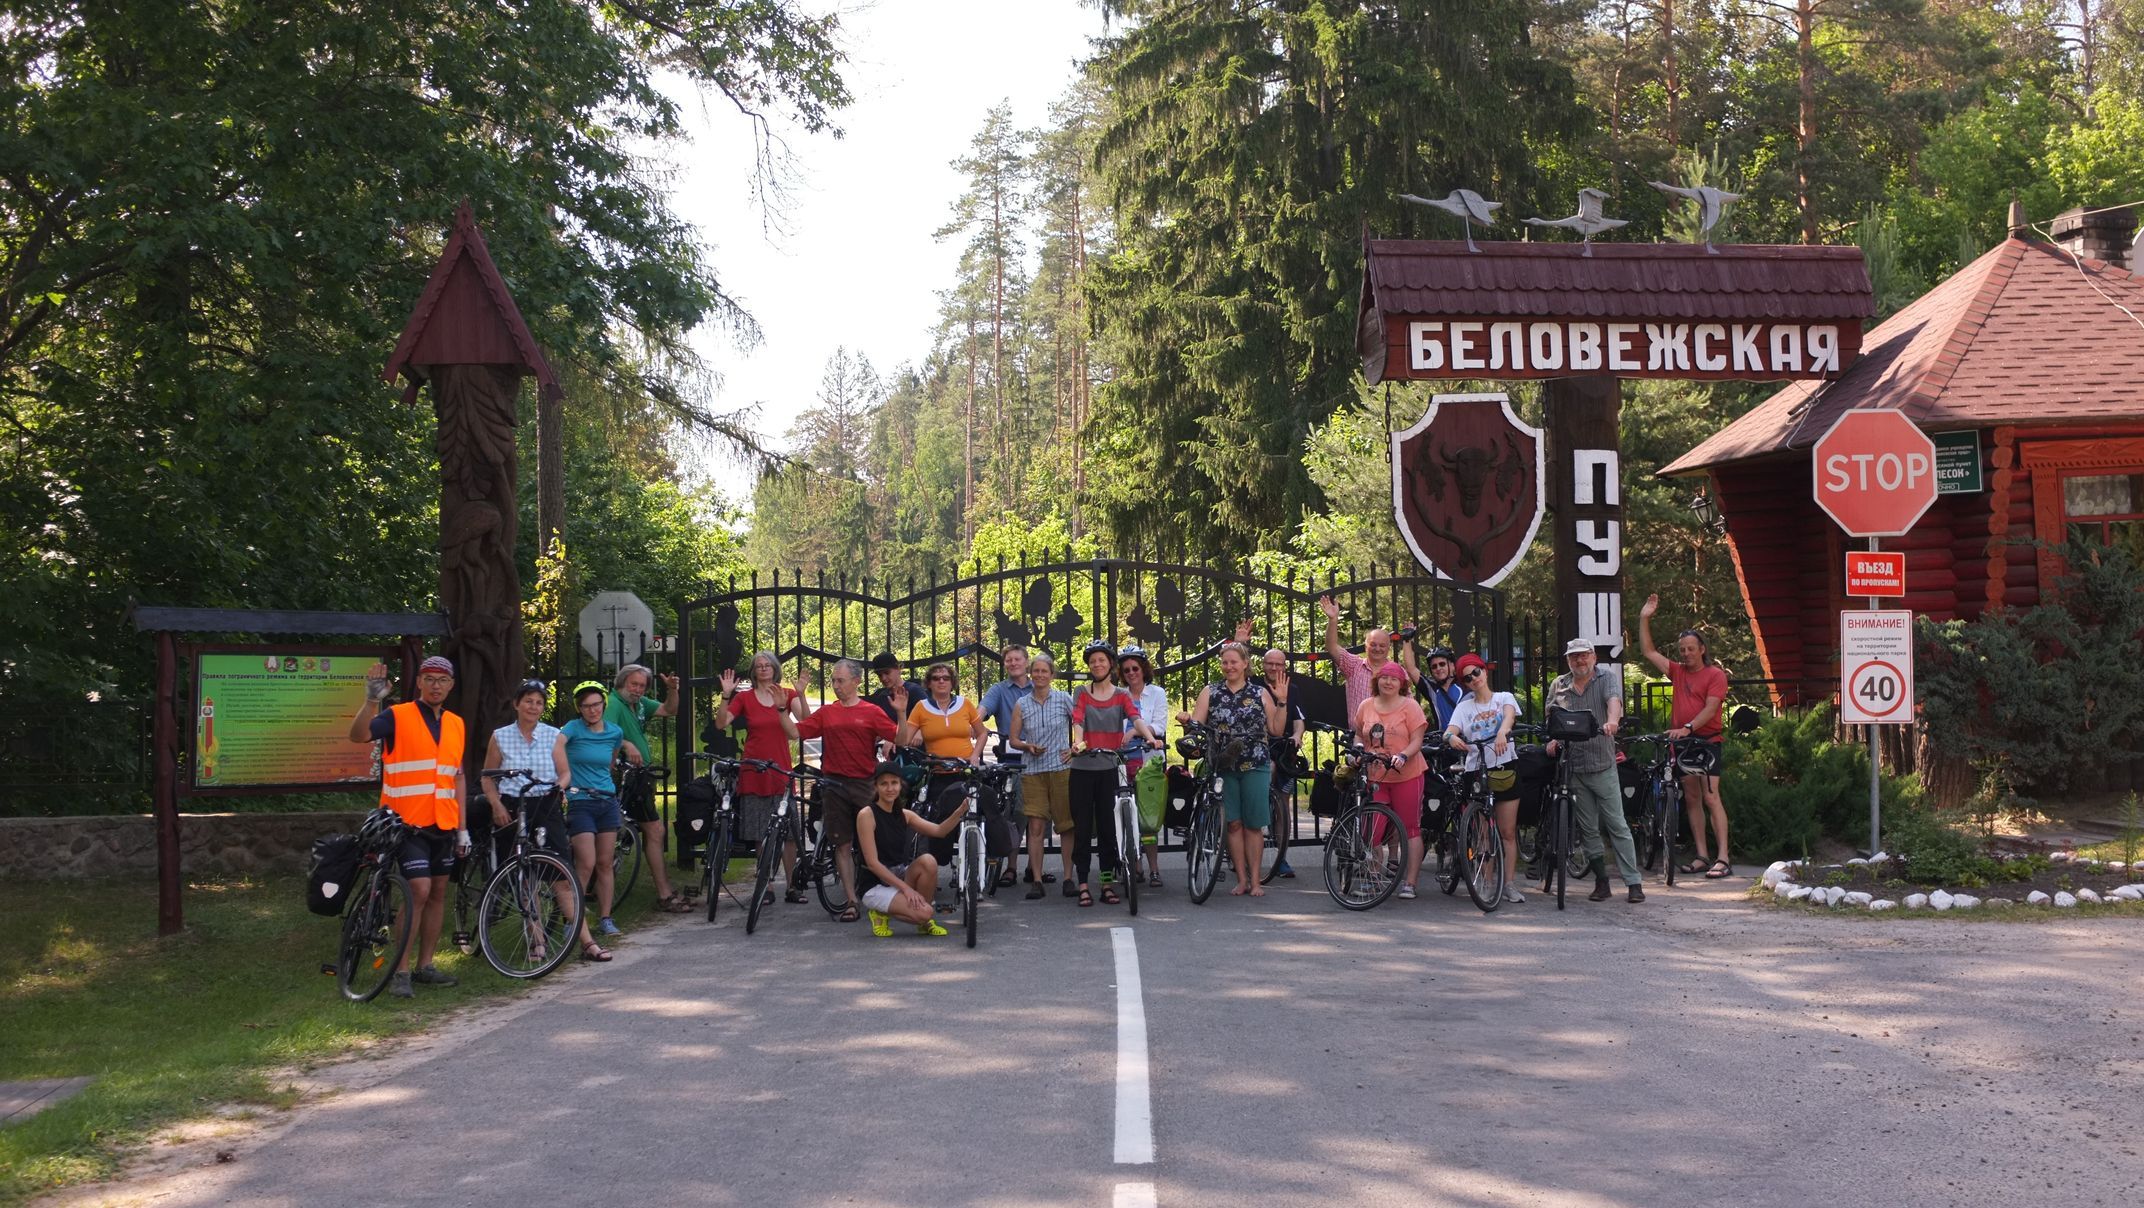 Первая группа дискуссионного велосипедного путешествия по беловежскому лесу из 10 беларусских и 12 немецких участников